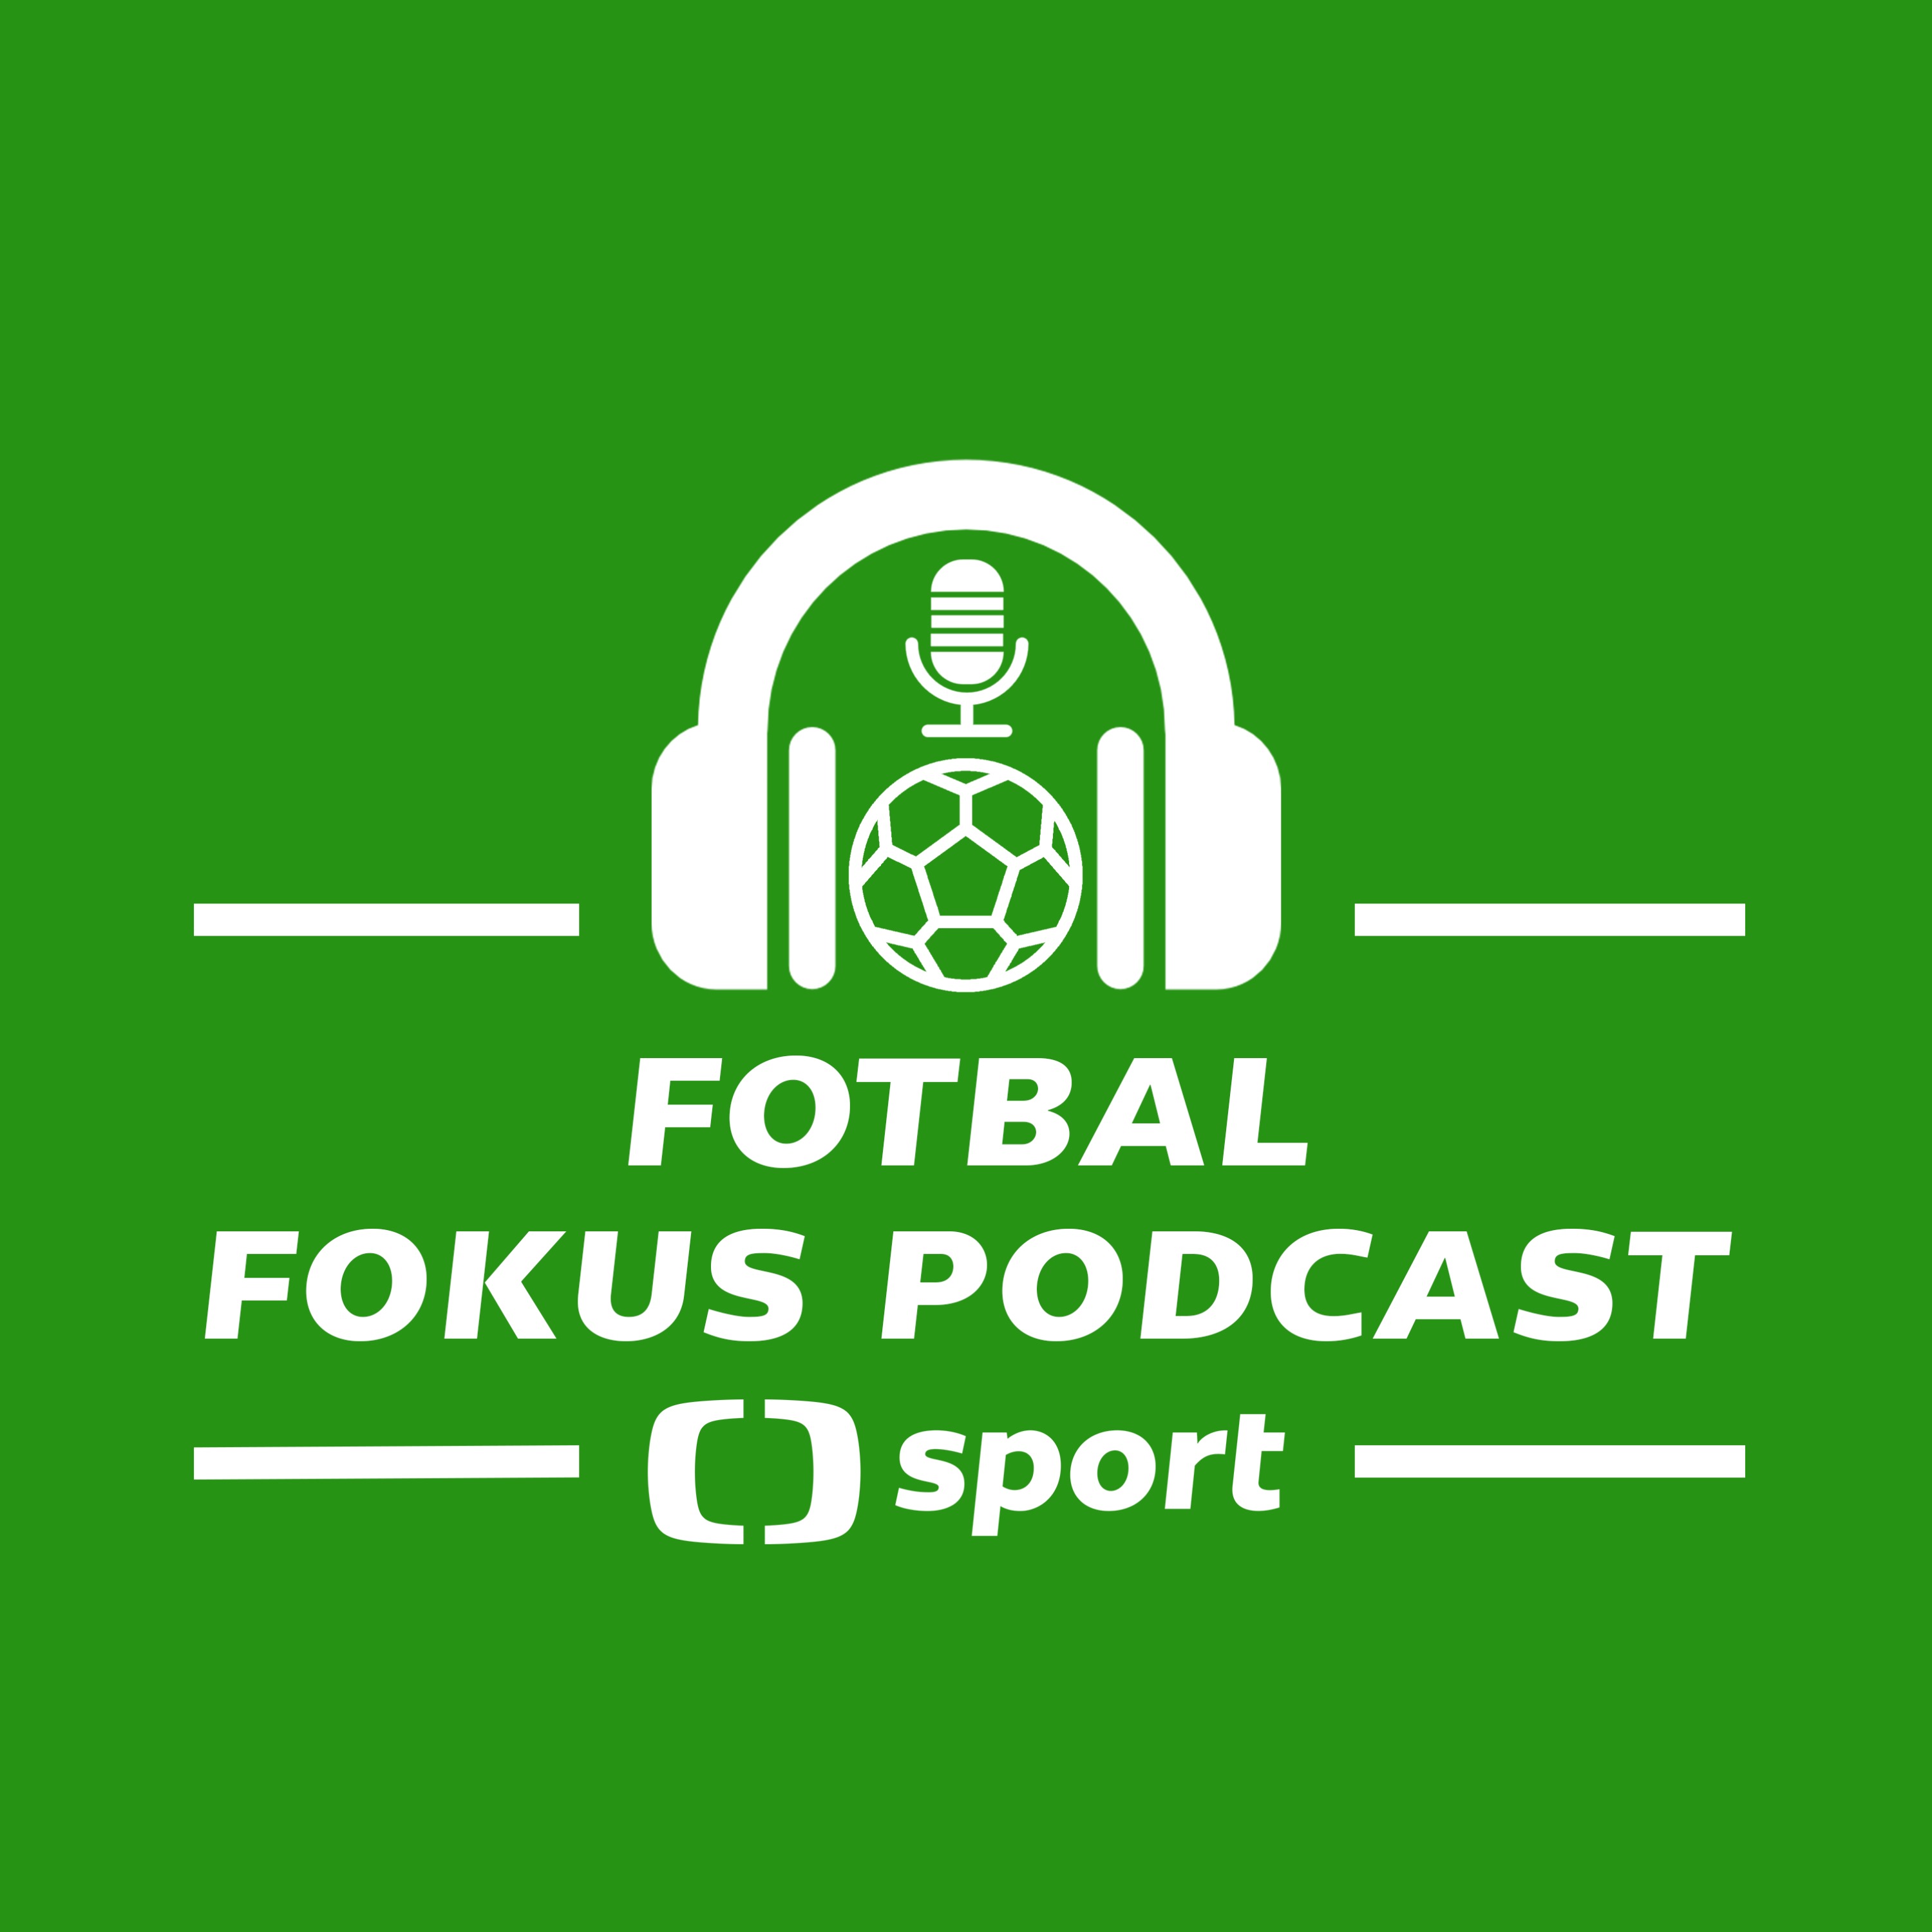 Fotbal fokus podcast: Kauza rasismus v Glasgow, renomé Slavie a trestající UEFA